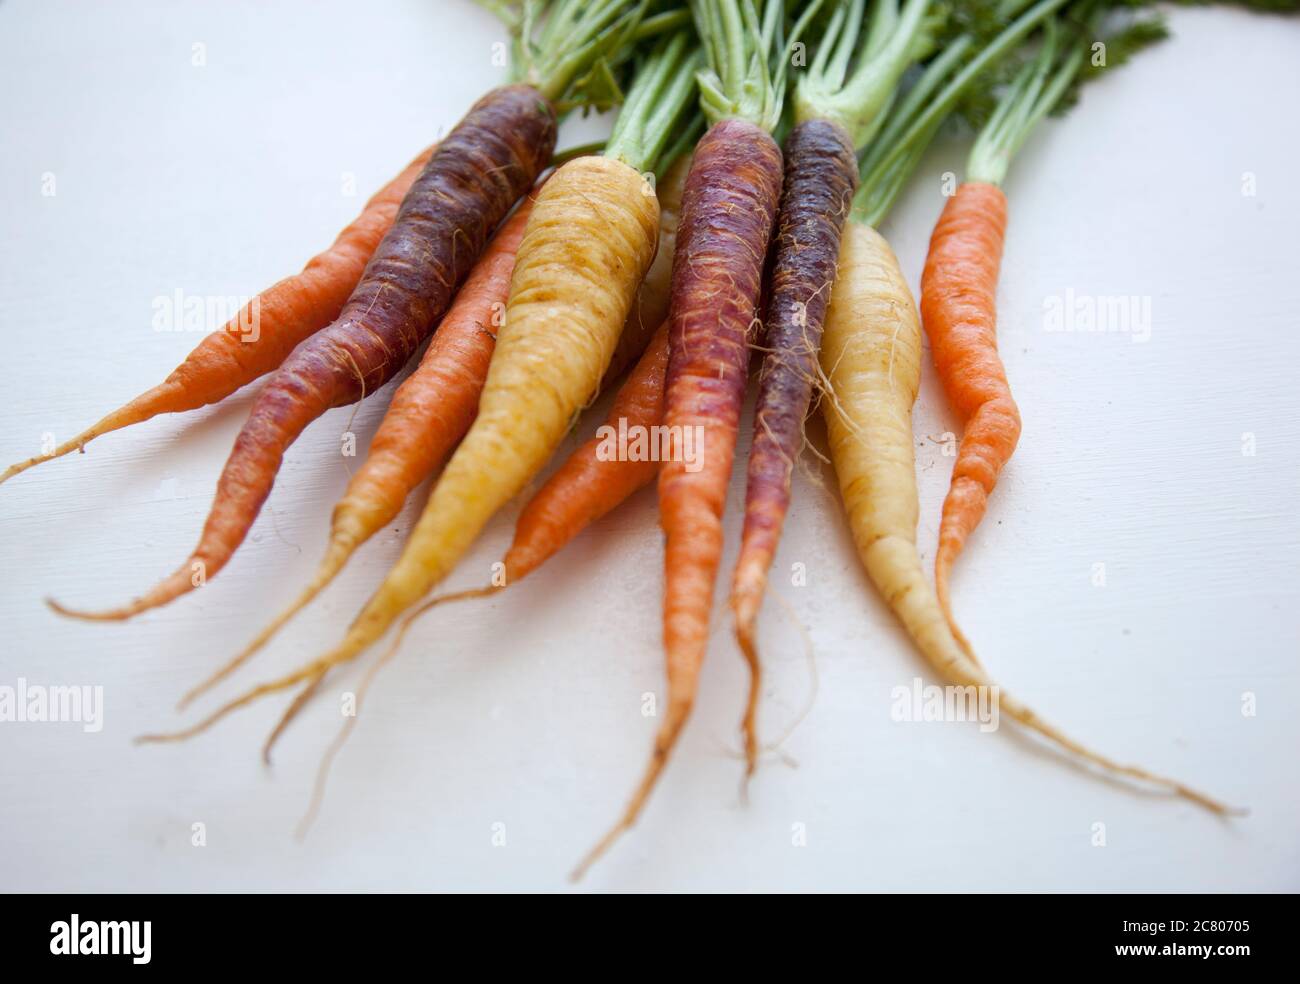 Nahaufnahme eines Bündels frisch gepflückter Karotten auf weißem Grund Stockfoto